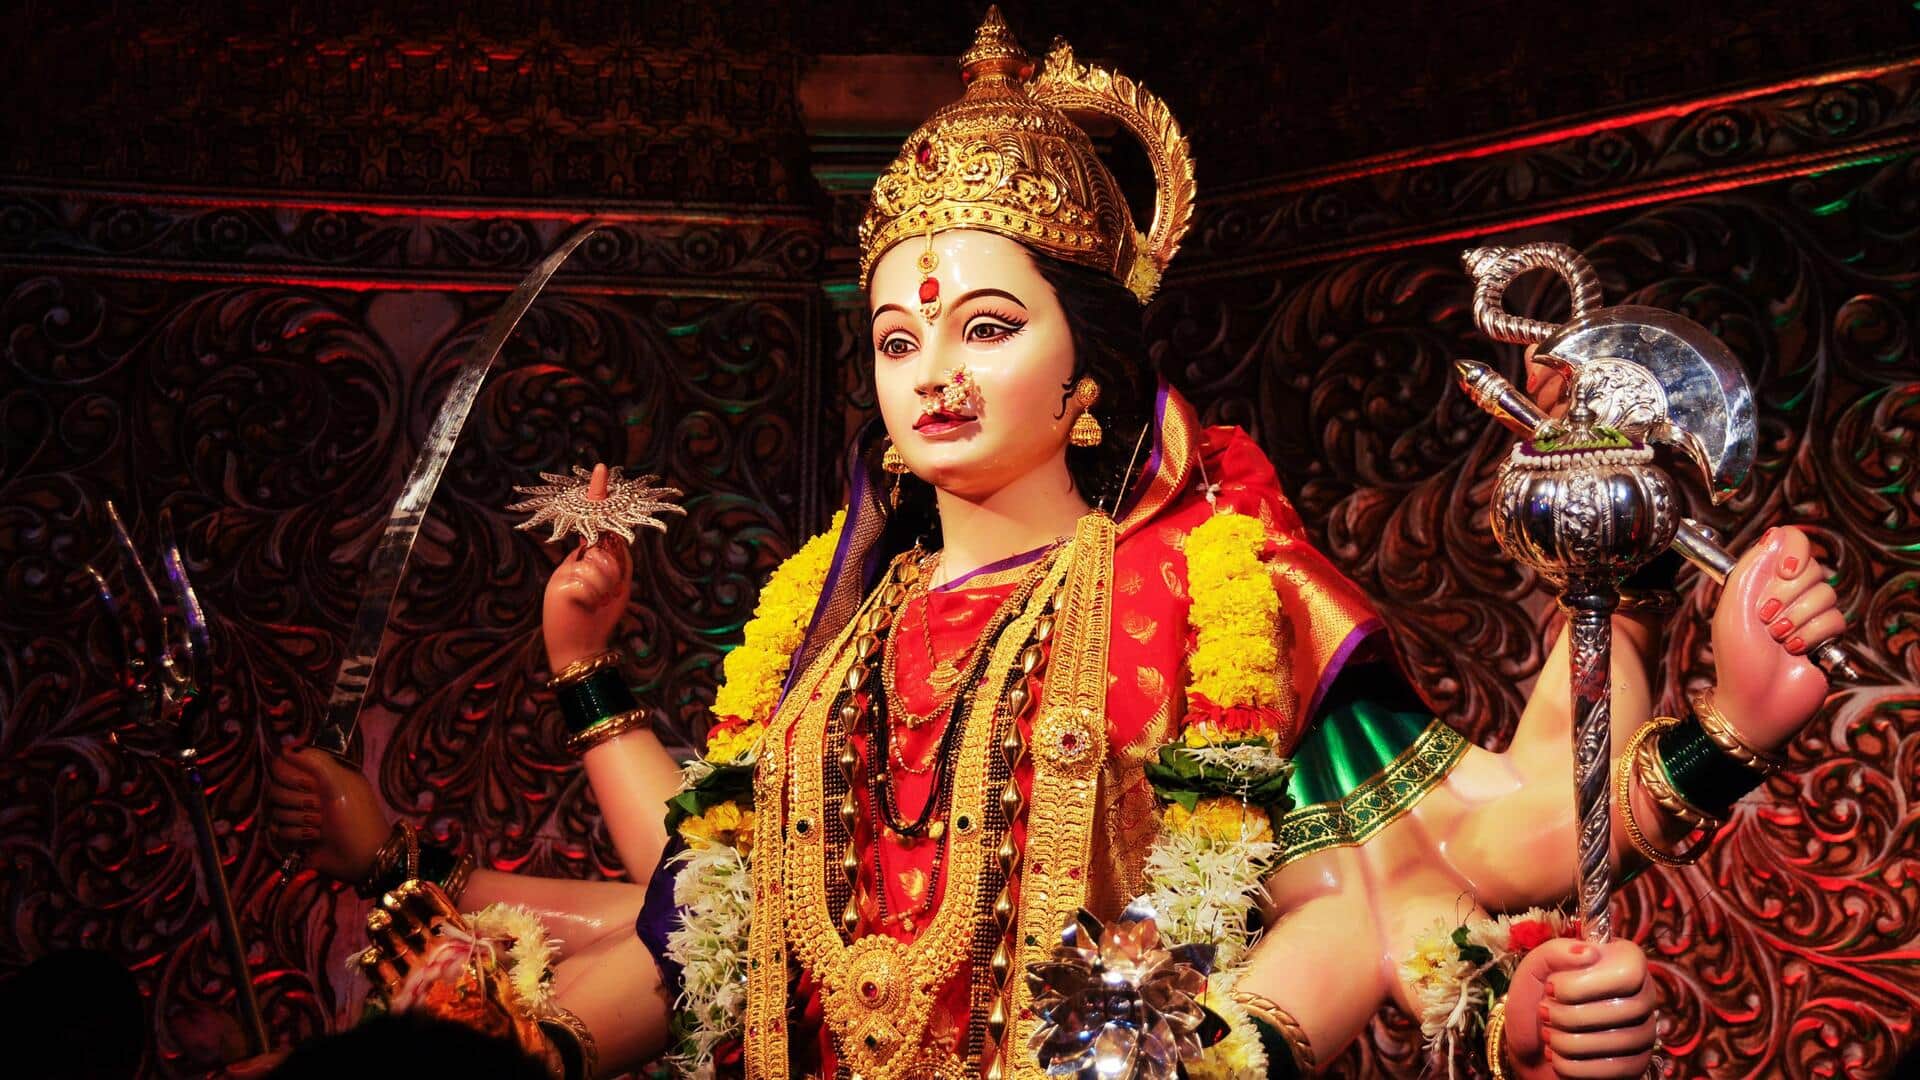 दक्षिण भारत के किस राज्य में कैसे मनाया जाता है नवरात्रि का त्योहार? जानिए महत्वपूर्ण बातें